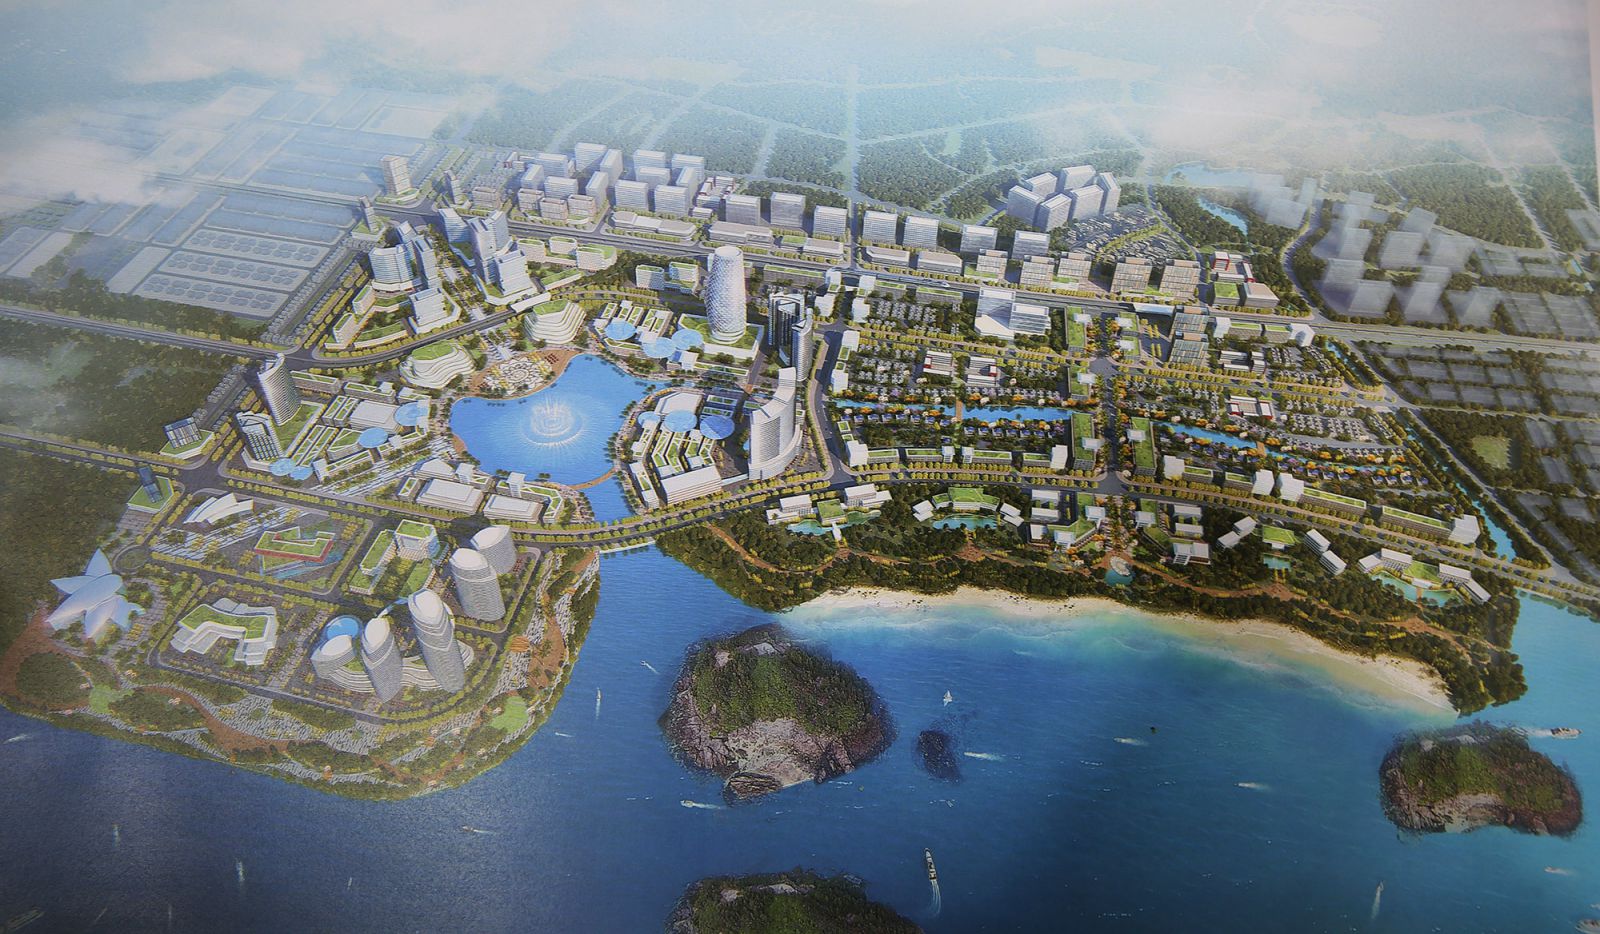 Tham vọng siêu dự án 200 ha ở Vân Đồn, trong khi tập đoàn DOJI vẫn 'chật vật' vì dự án 9 tầng xây gần 10 năm chưa xong?